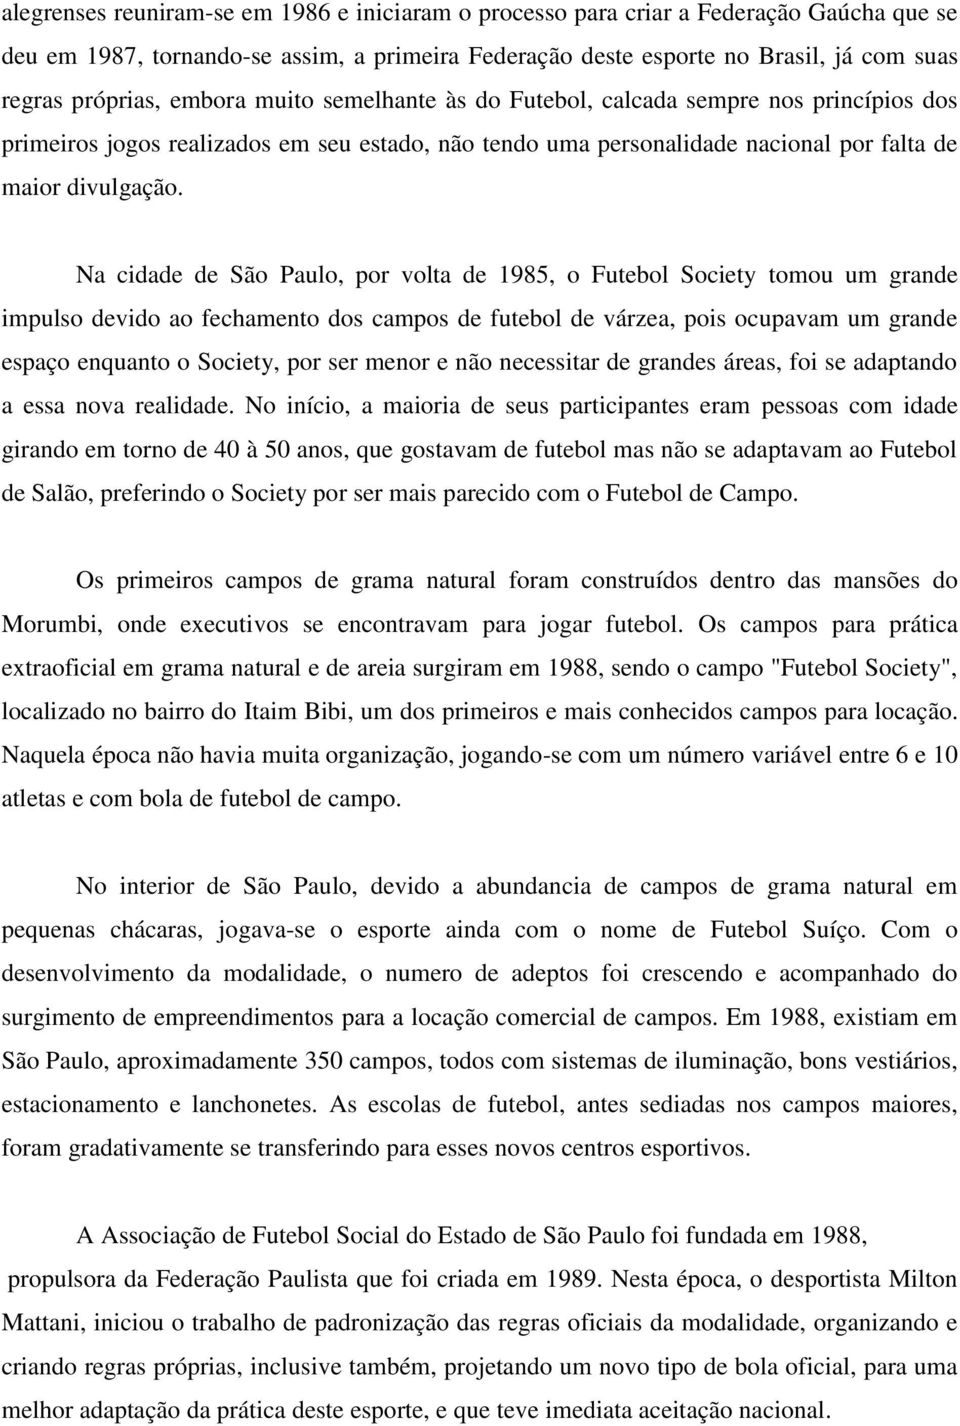 Na cidade de São Paulo, por volta de 1985, o Futebol Society tomou um grande impulso devido ao fechamento dos campos de futebol de várzea, pois ocupavam um grande espaço enquanto o Society, por ser